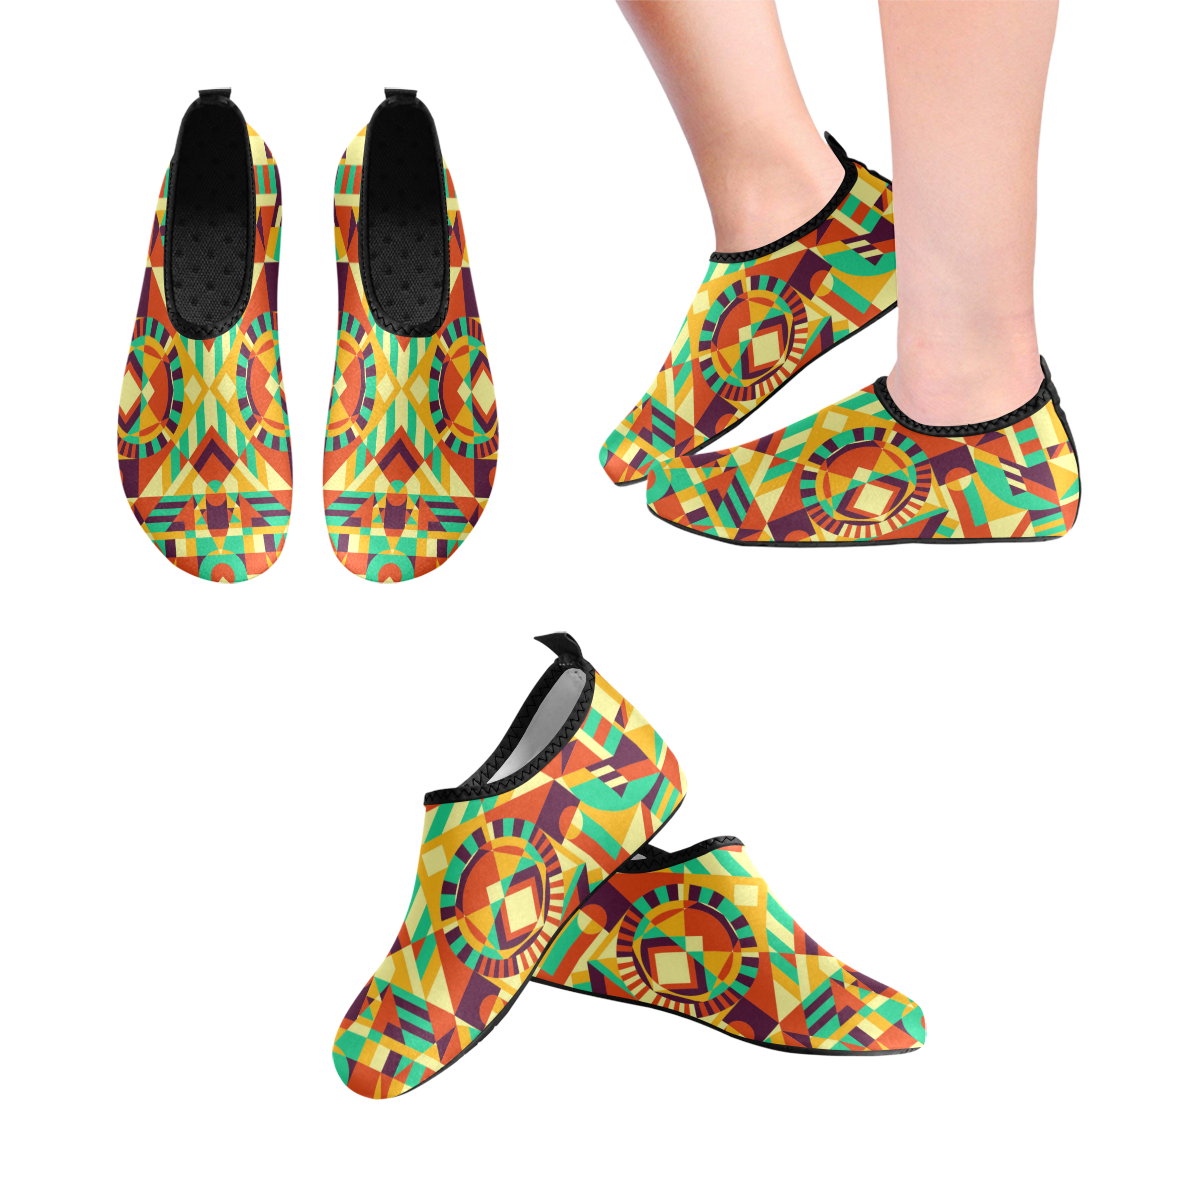 Modern Geometric Pattern Men's Slip-On Water Shoes (Model 056)